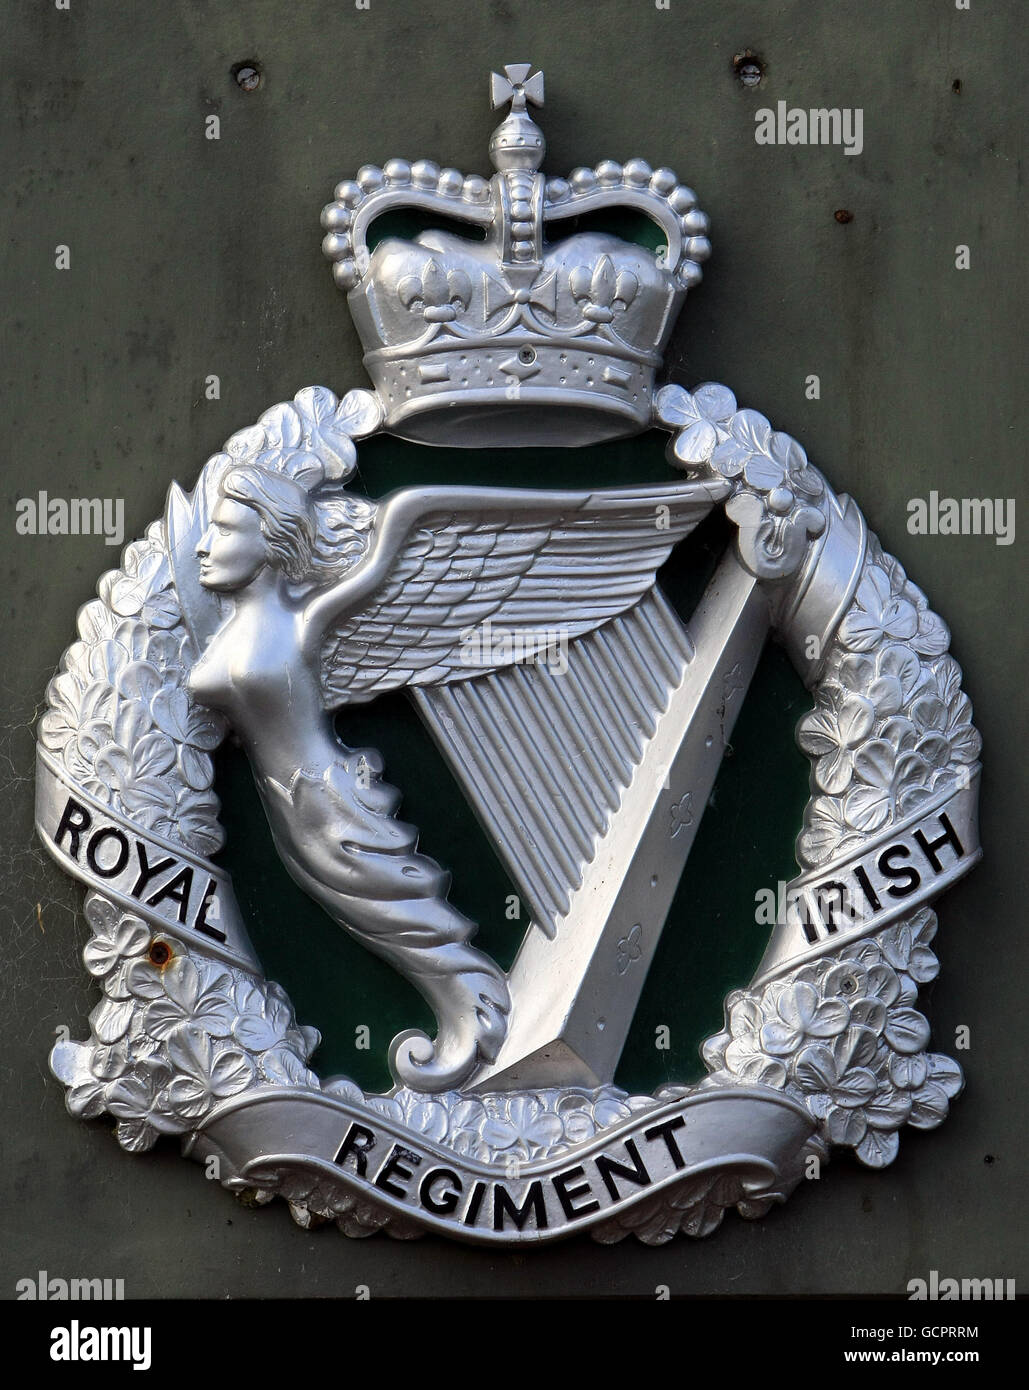 Das Wappen des Royal Irish Regiment als erstes Bataillon bereitet sich das Royal Irish Regiment auf die Abreise nach Afghanistan vor. DRÜCKEN Sie VERBANDSFOTO. Bilddatum: Mittwoch, 15. September 2010. Das Royal Irish Regiment kann seine Geschichte bis ins Jahr 1689 zurückverfolgen, unter anderem durch die Napoleonischen Kriege, den Burenkrieg, den Ersten und Zweiten Weltkrieg 1992 fusionierten die Royal Irish Rangers mit dem Ulster Defense Regiment, um das Royal Irish Regiment zu bilden. In Erinnerung an seinen Vorgänger tragen die Soldaten mit dem niedrigsten Rang den Titel Rangers, anstatt Private. Das Bataillon ist Teil der 16 Air Assault Brigade, Stockfoto